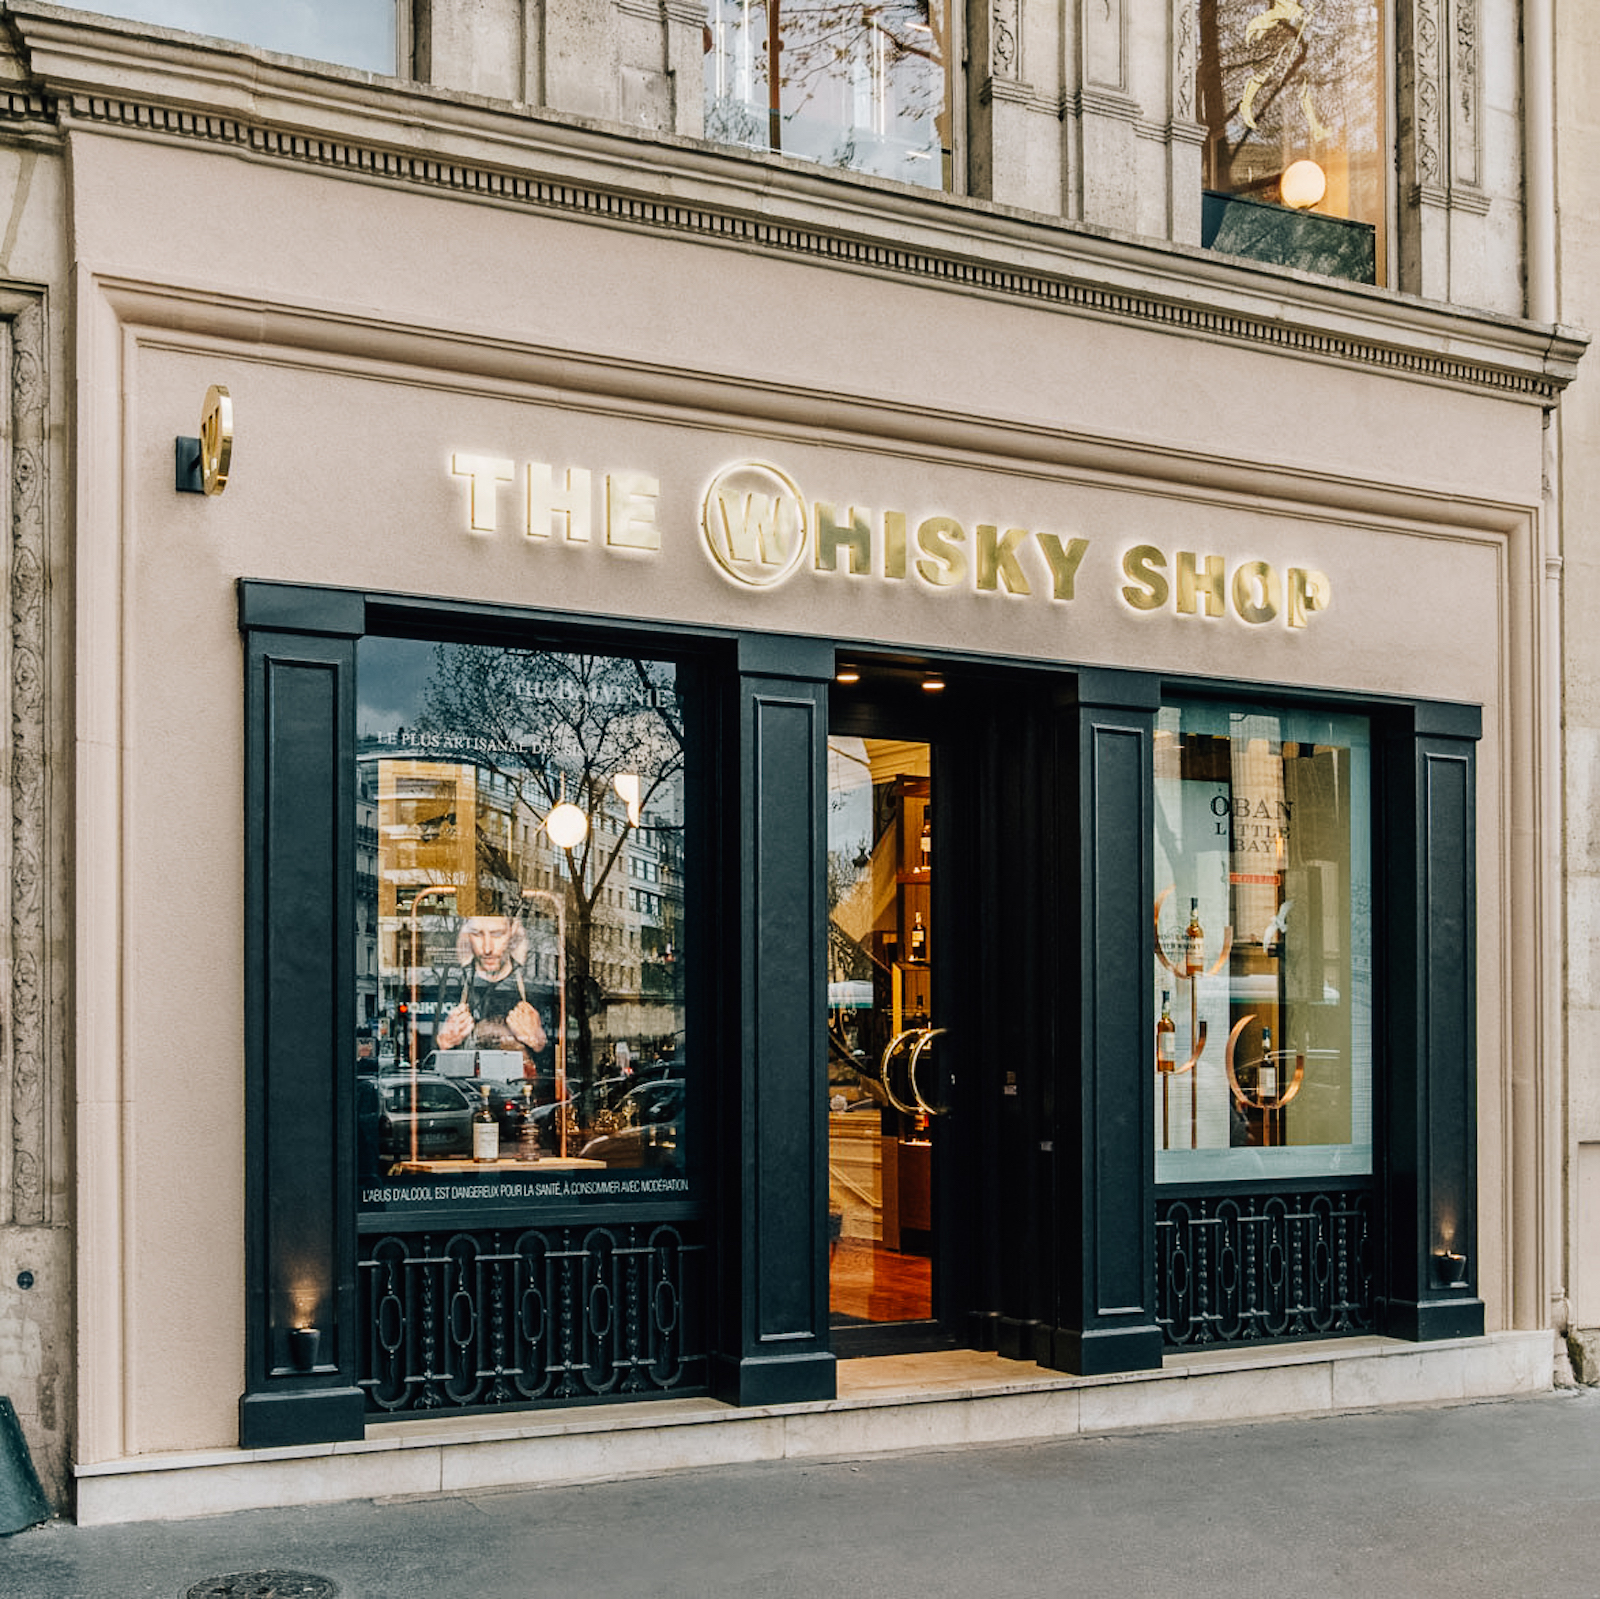 The Whisky Shop Paris